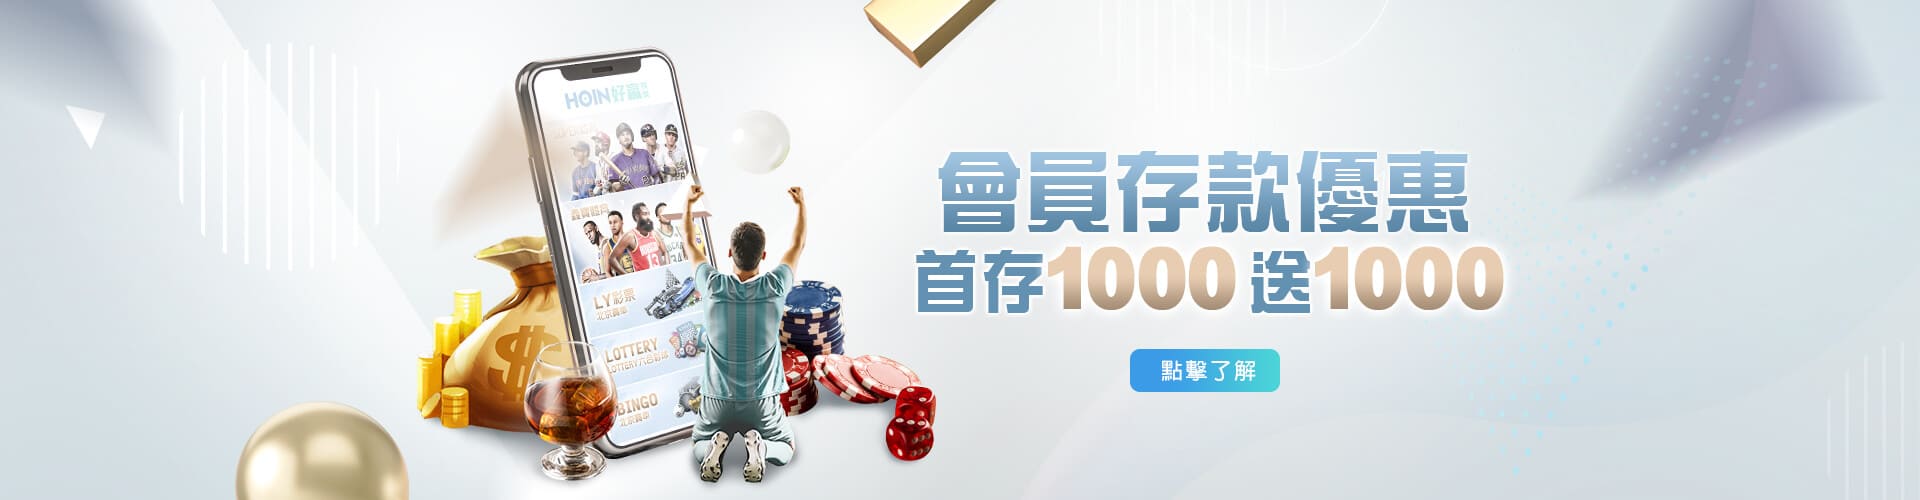 【老虎機電子遊戲】老虎機的玩法與技巧-線上娛樂城推薦存款1000送1000優惠